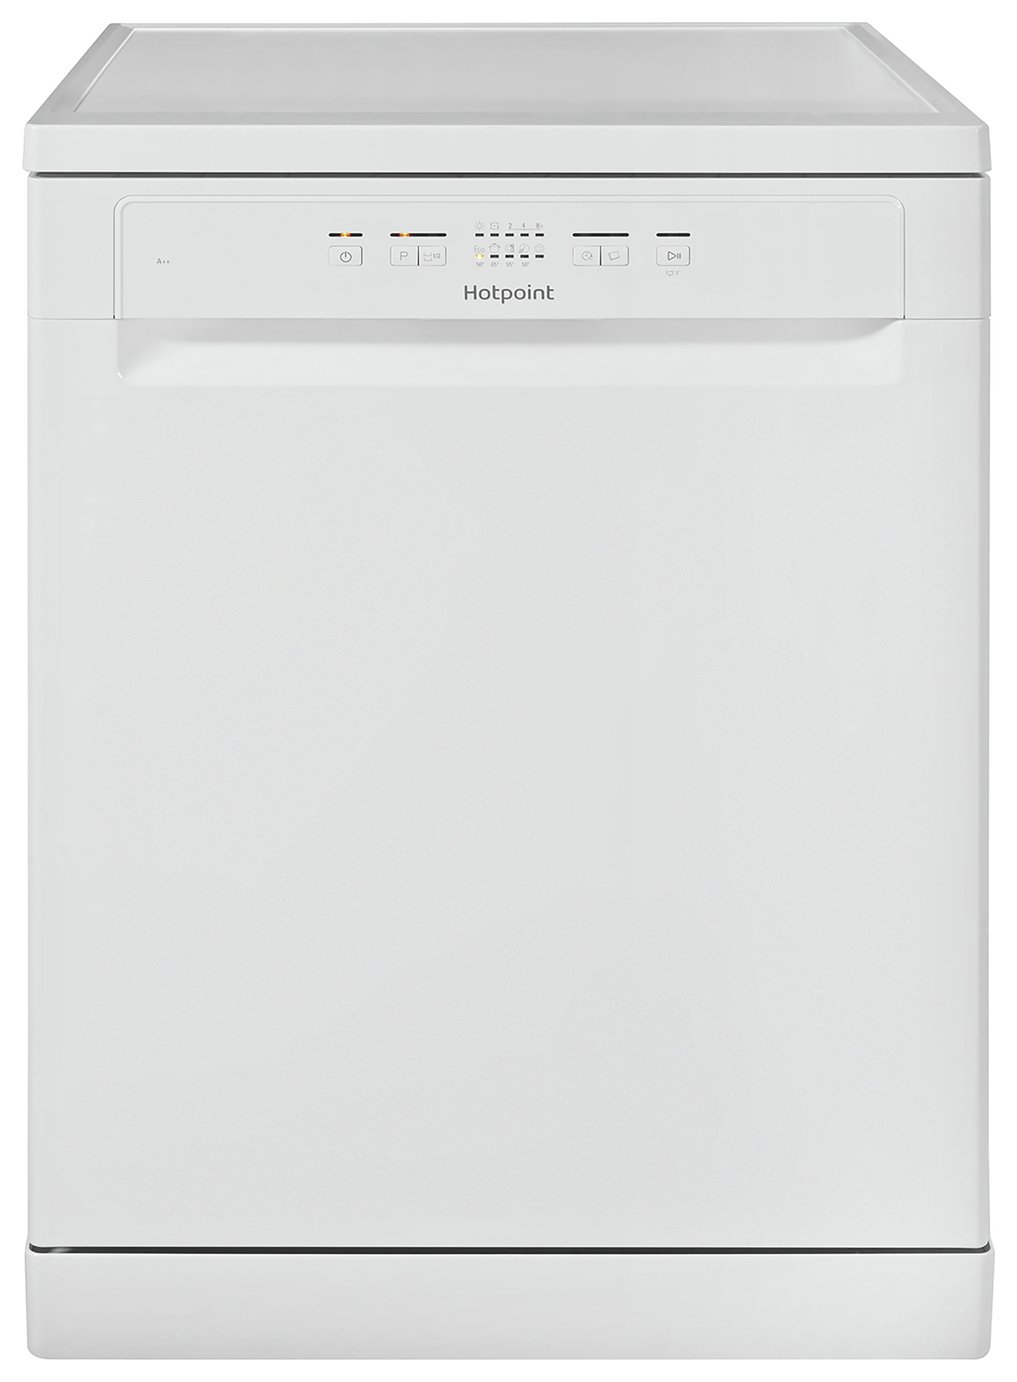 Hotpoint HFC2B 26C Full Size Dishwasher - White